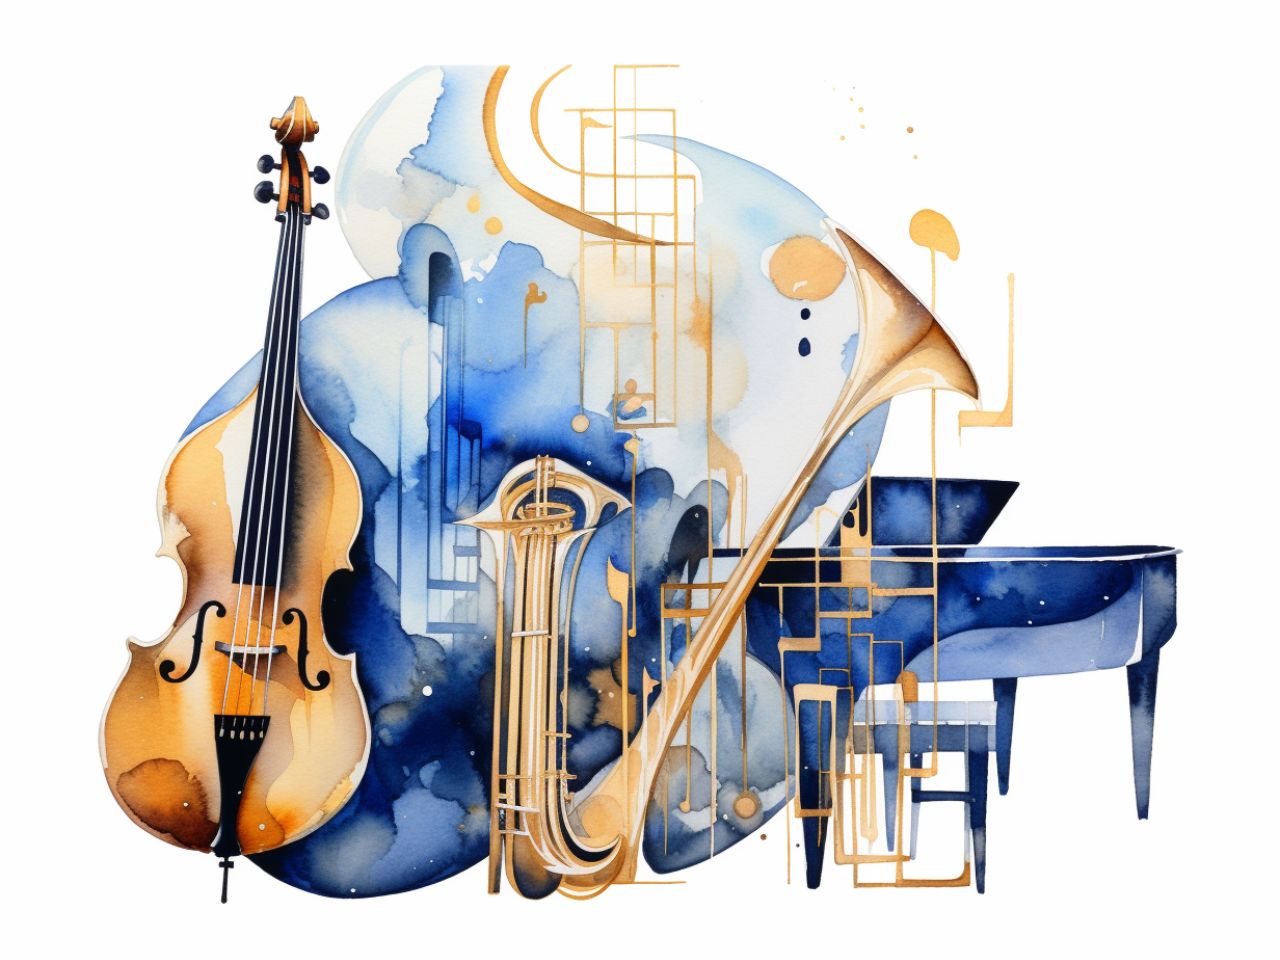 Imagen del concierto Ritmos de Moda de la UAM. Se muestra un conjunto de instrumentos propios del jazz pintados con acuarela